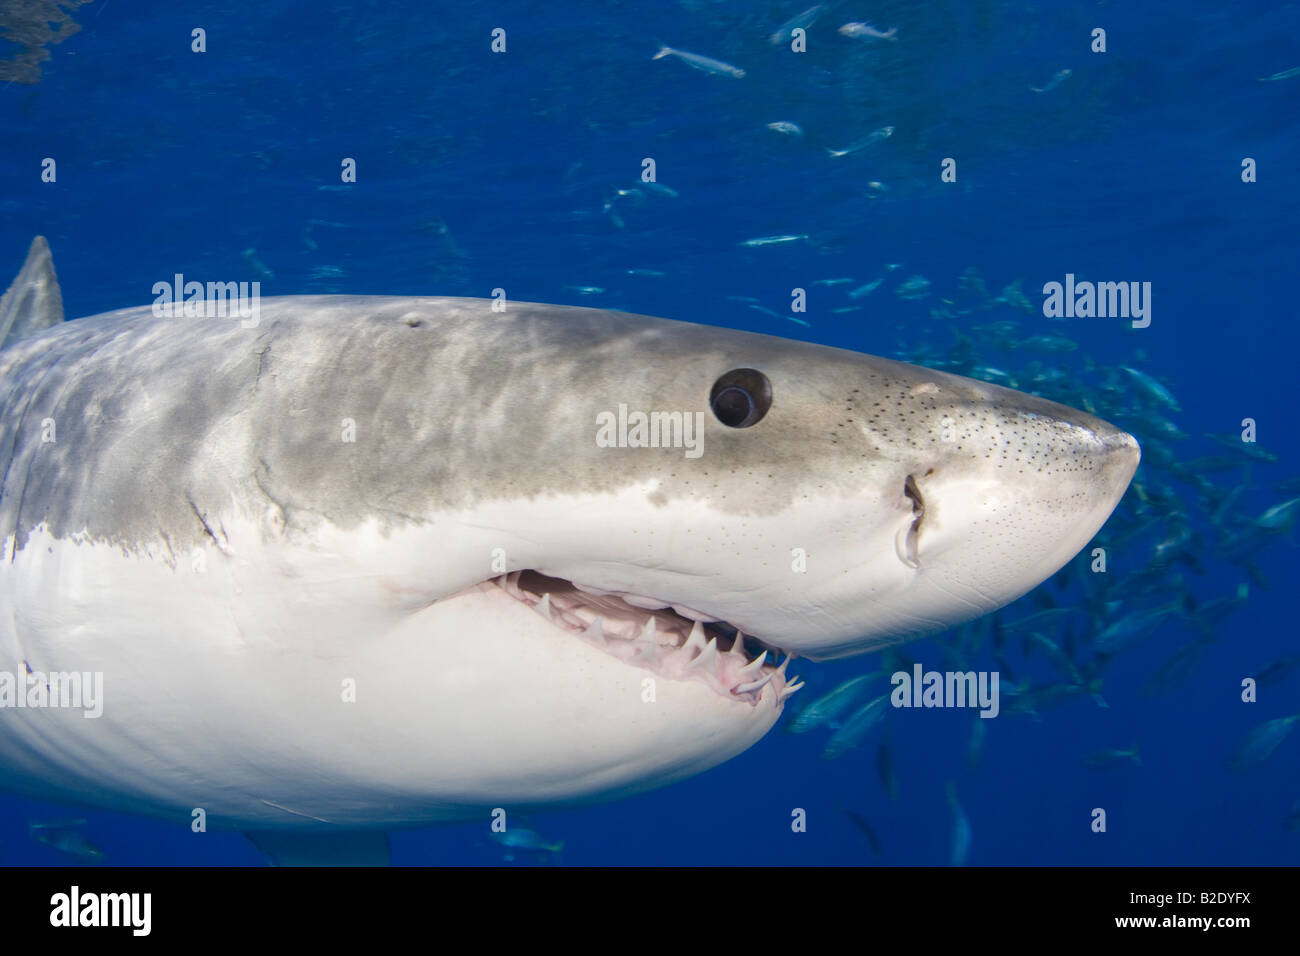 Ce grand requin blanc, Carcharodon carcharias, a été photographié sous la surface au large de l'île de Guadalupe, au Mexique. Banque D'Images